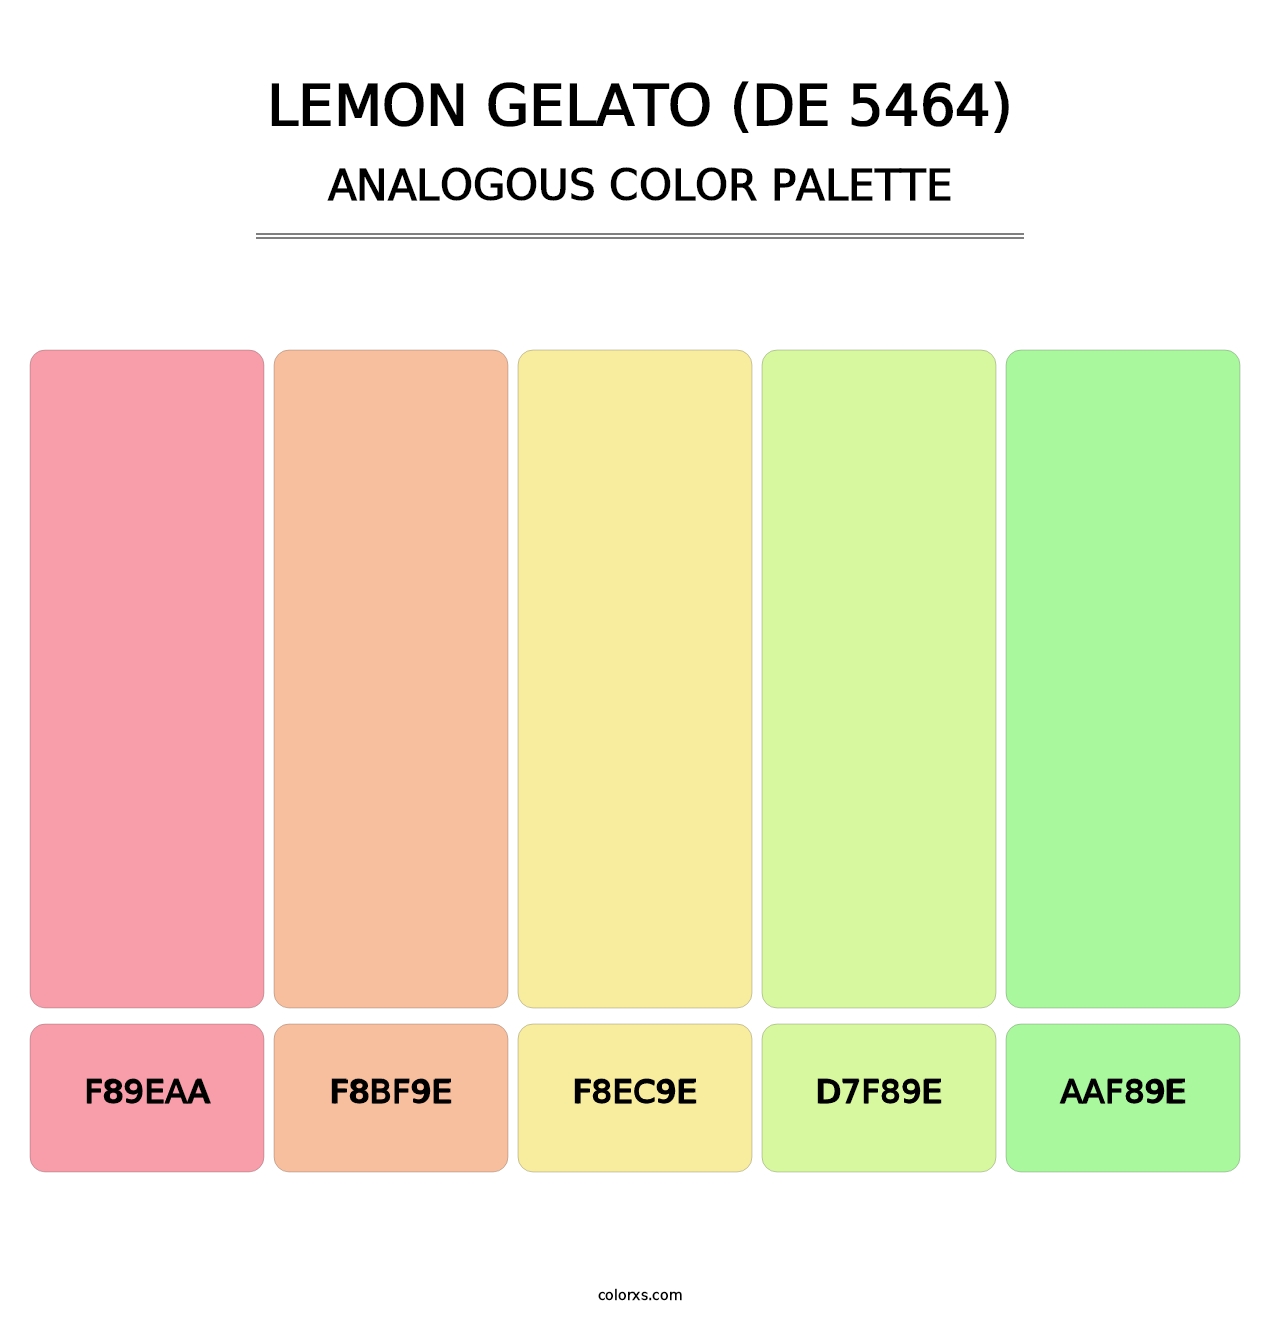 Lemon Gelato (DE 5464) - Analogous Color Palette